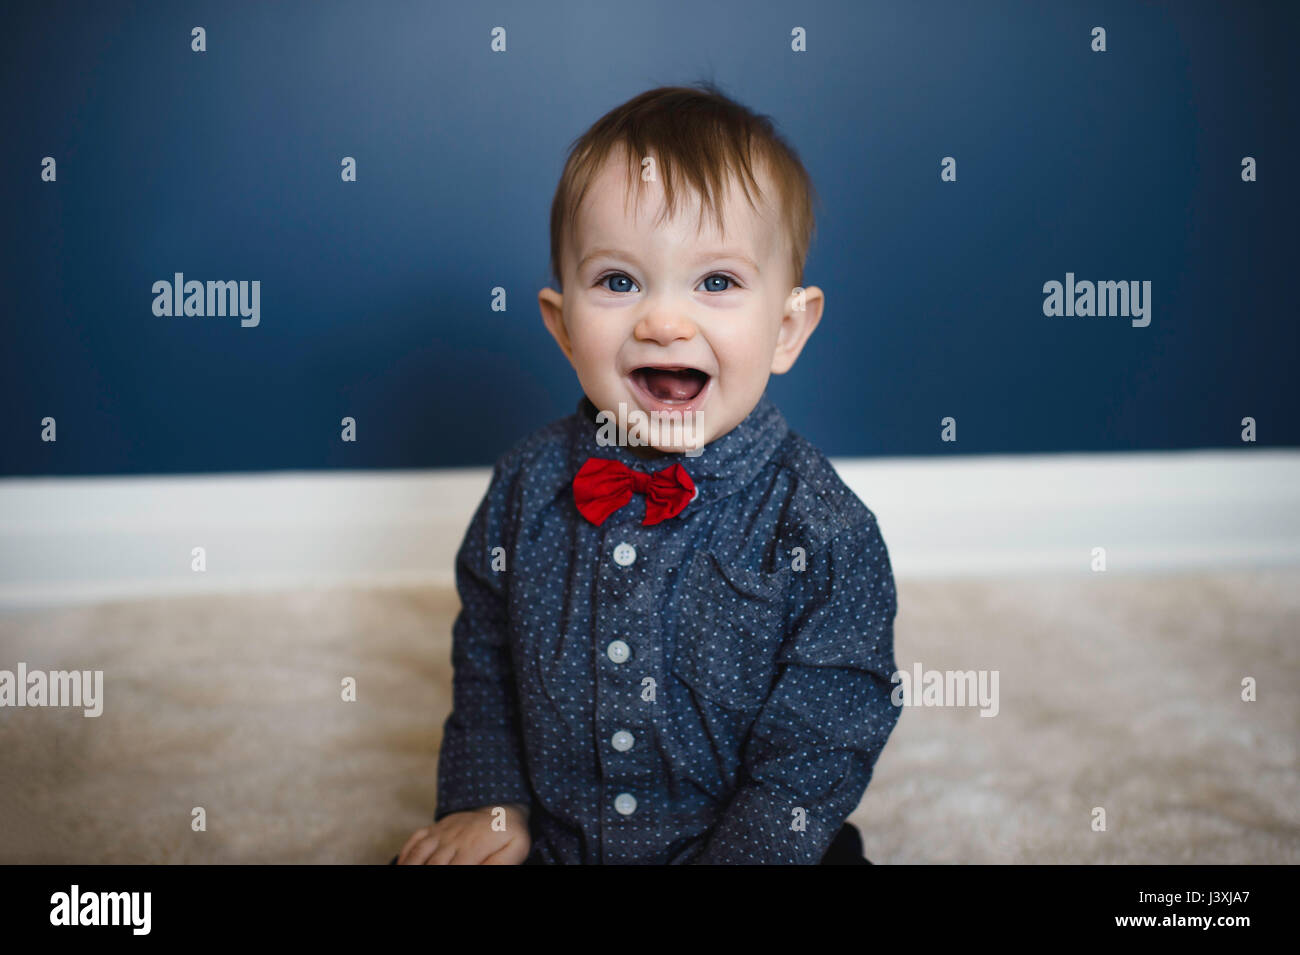 Ritratto di bimbi maschio in rosso il filtro bow tie seduto sul pavimento Foto Stock